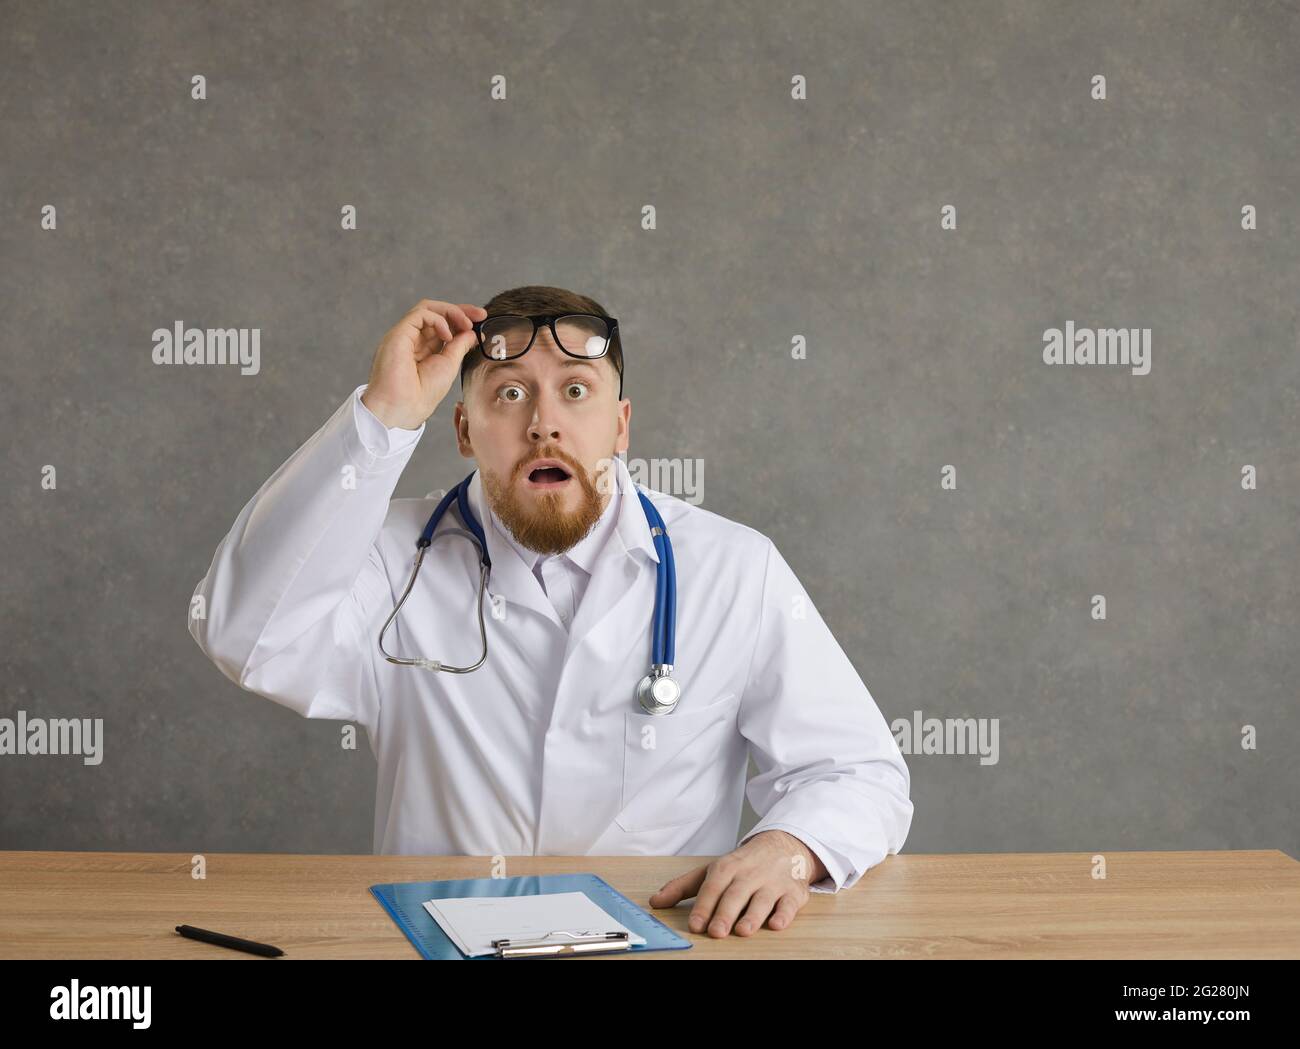 Un médecin choqué, un professionnel de la santé, prend des lunettes, s'assoit au bureau et regarde la caméra Banque D'Images